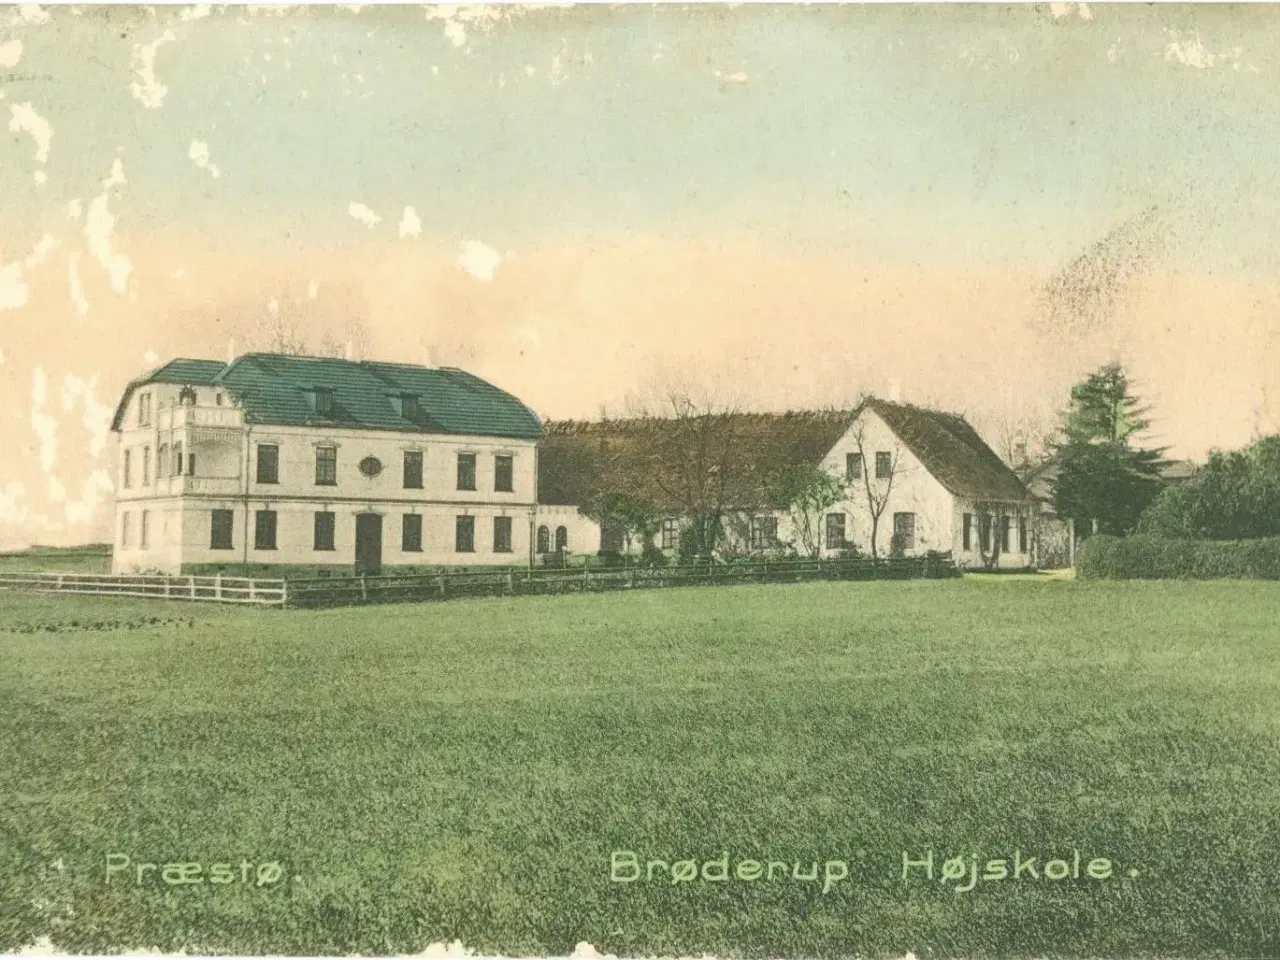 Billede 1 - Brøderup Højskole, Præstø. 1907